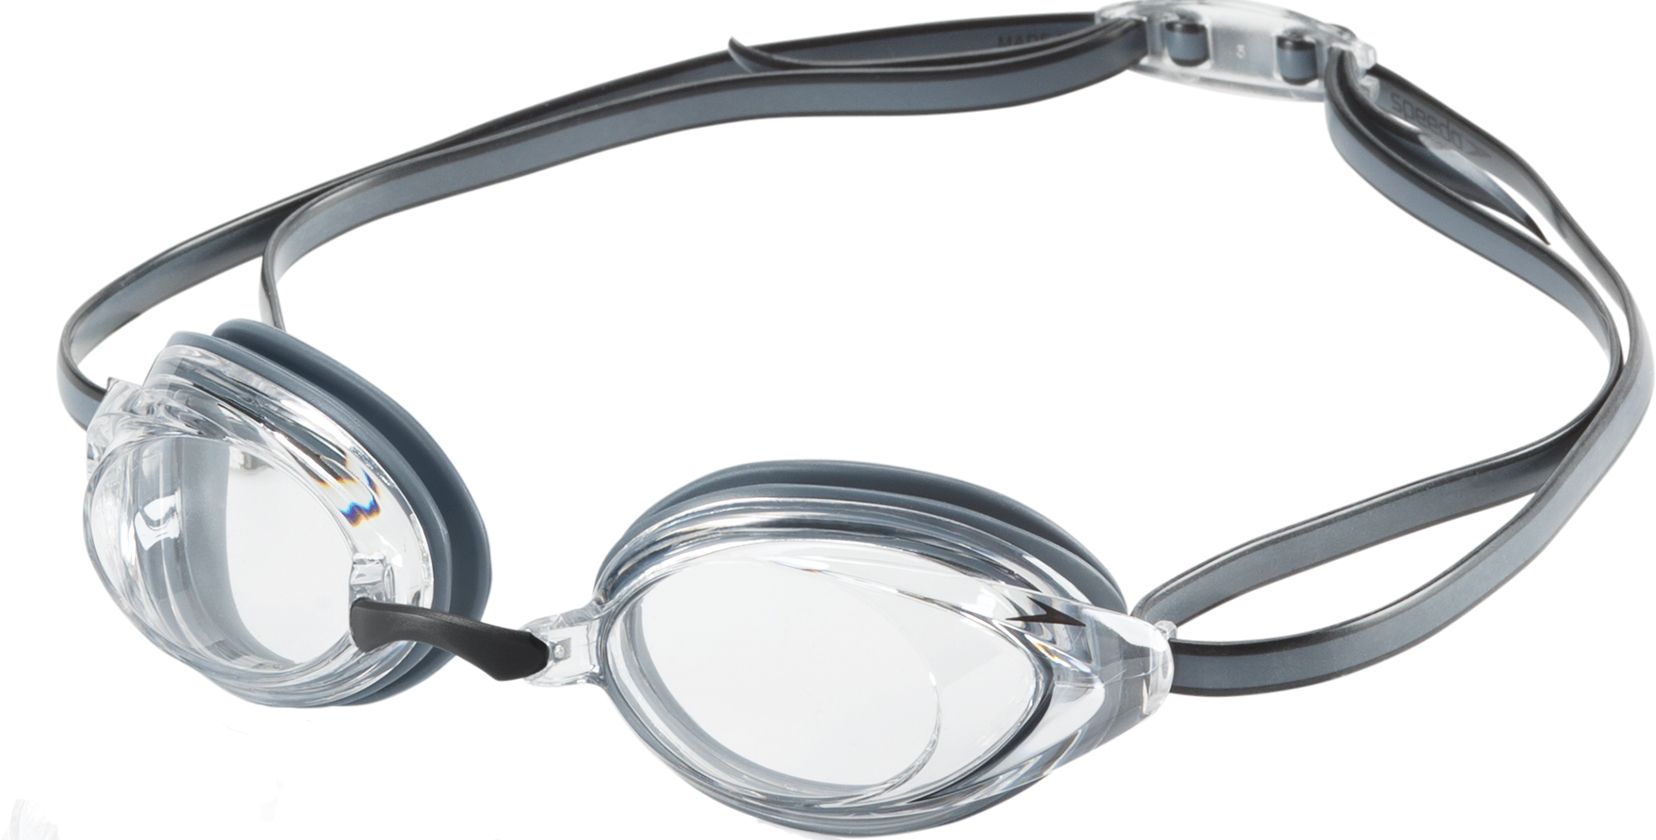 Speedo Vanquisher 2.0 Swim Goggles